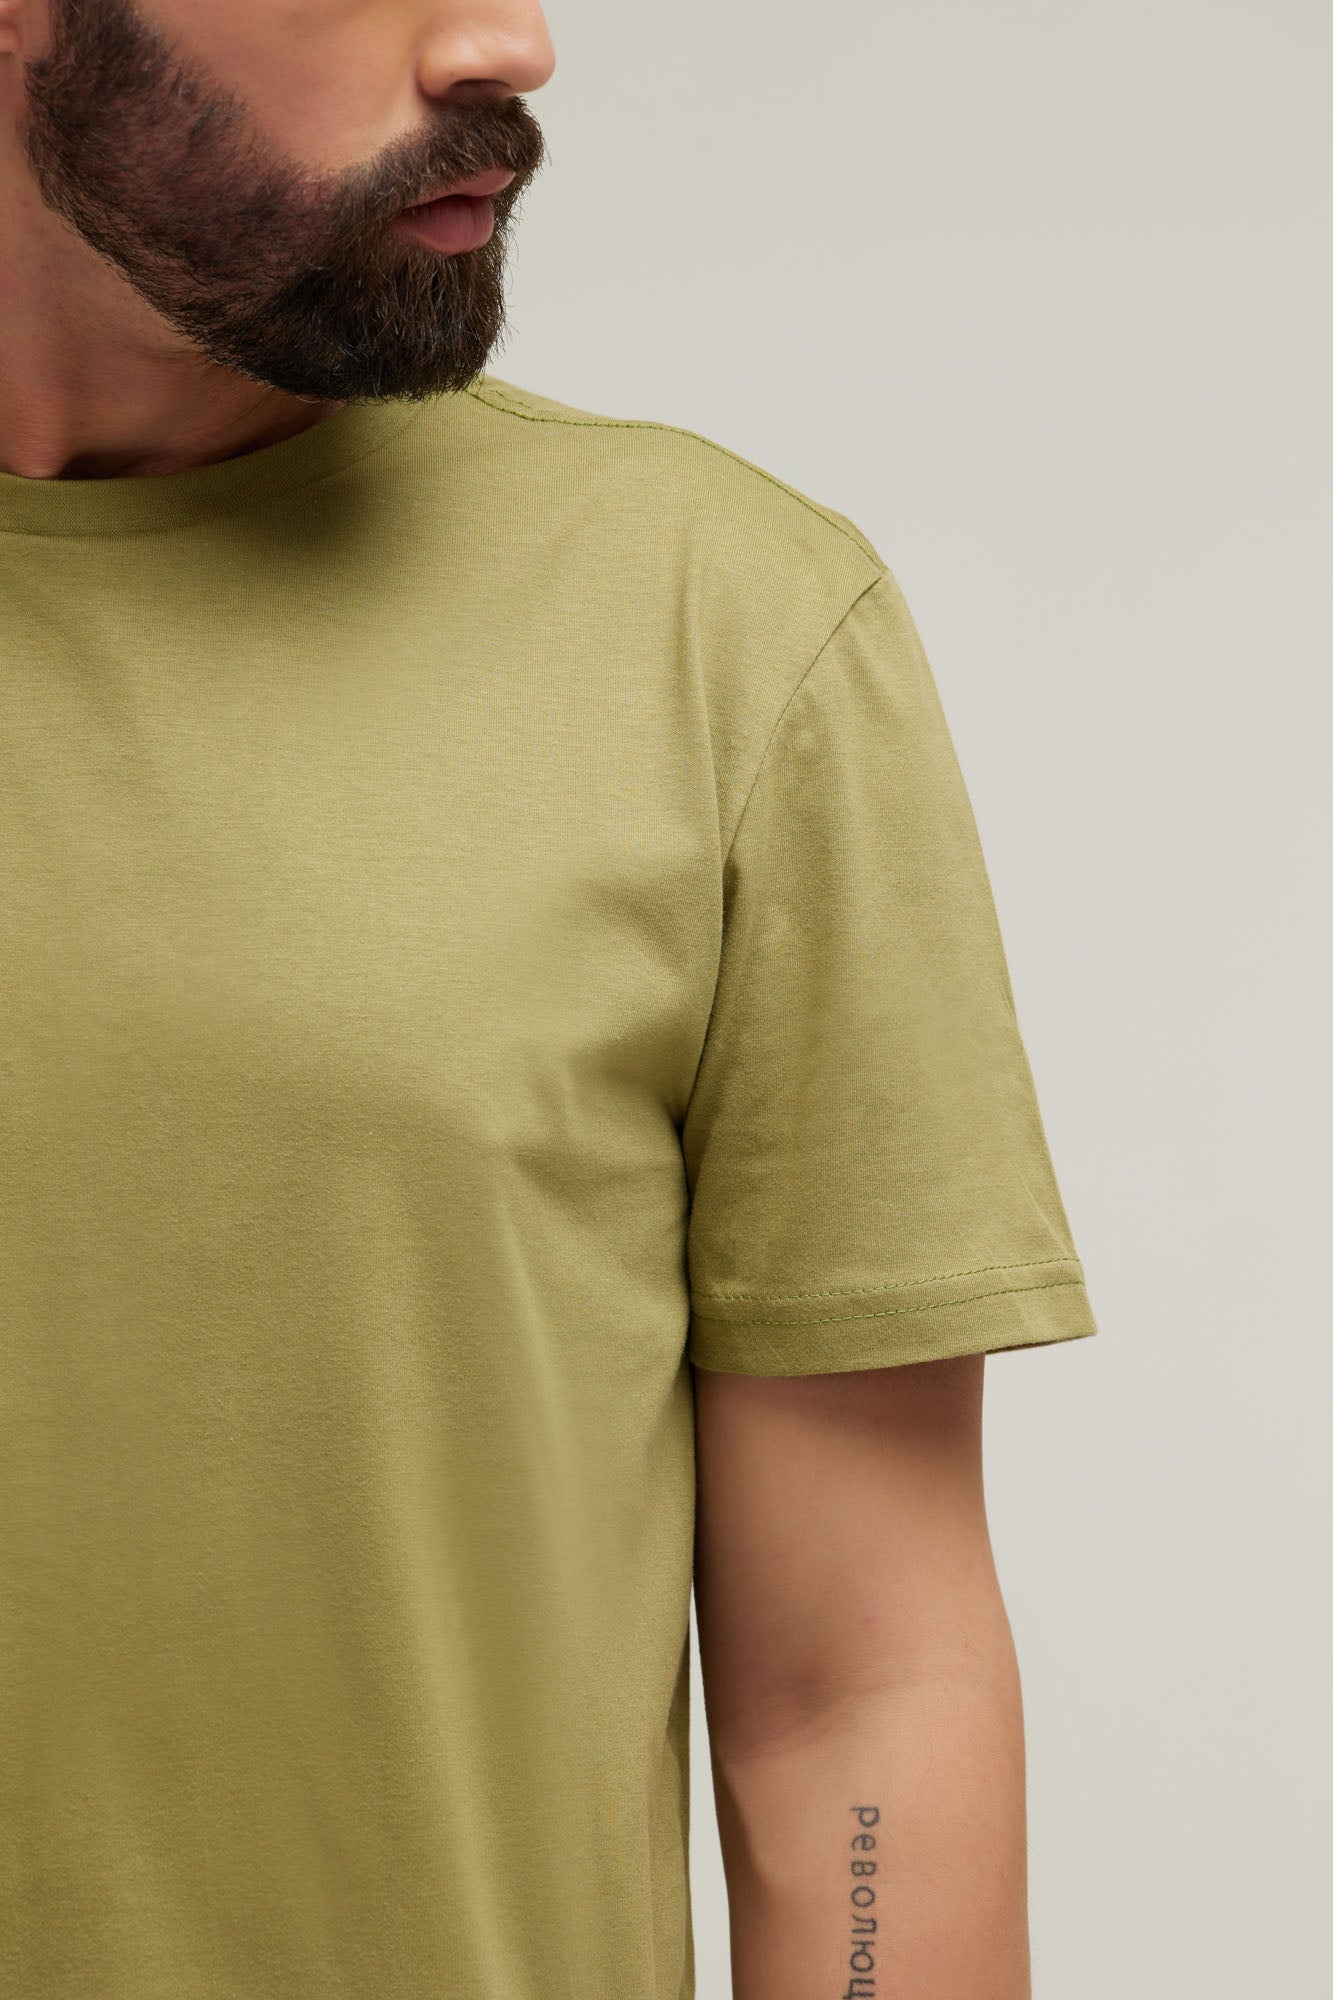 Camiseta Premium Verde Oliva